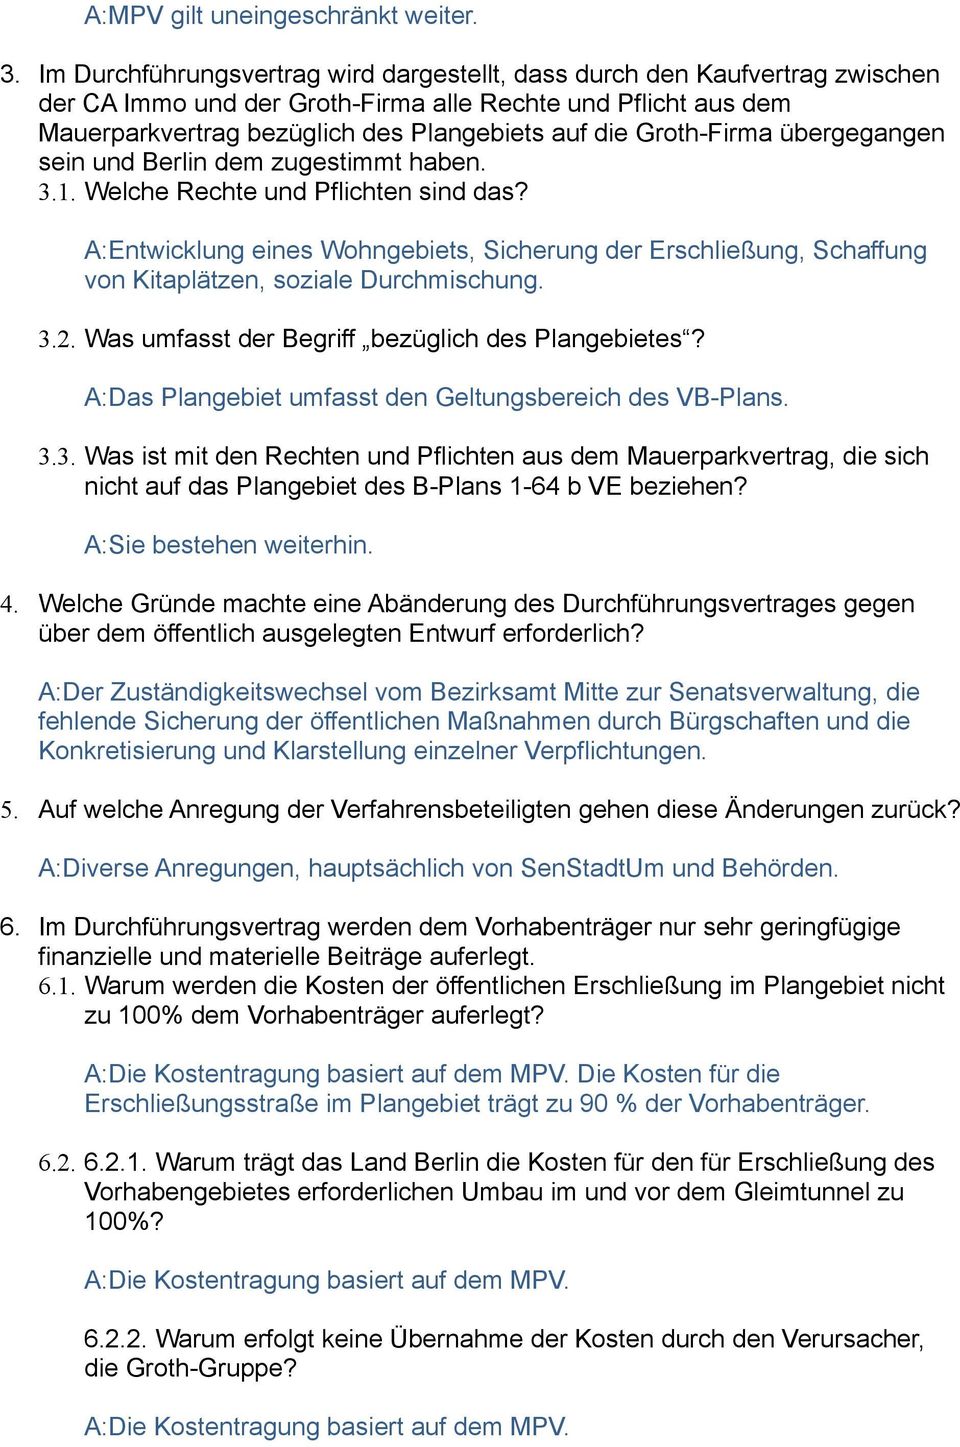 Groth-Firma übergegangen sein und Berlin dem zugestimmt haben. 3.1. Welche Rechte und Pflichten sind das?